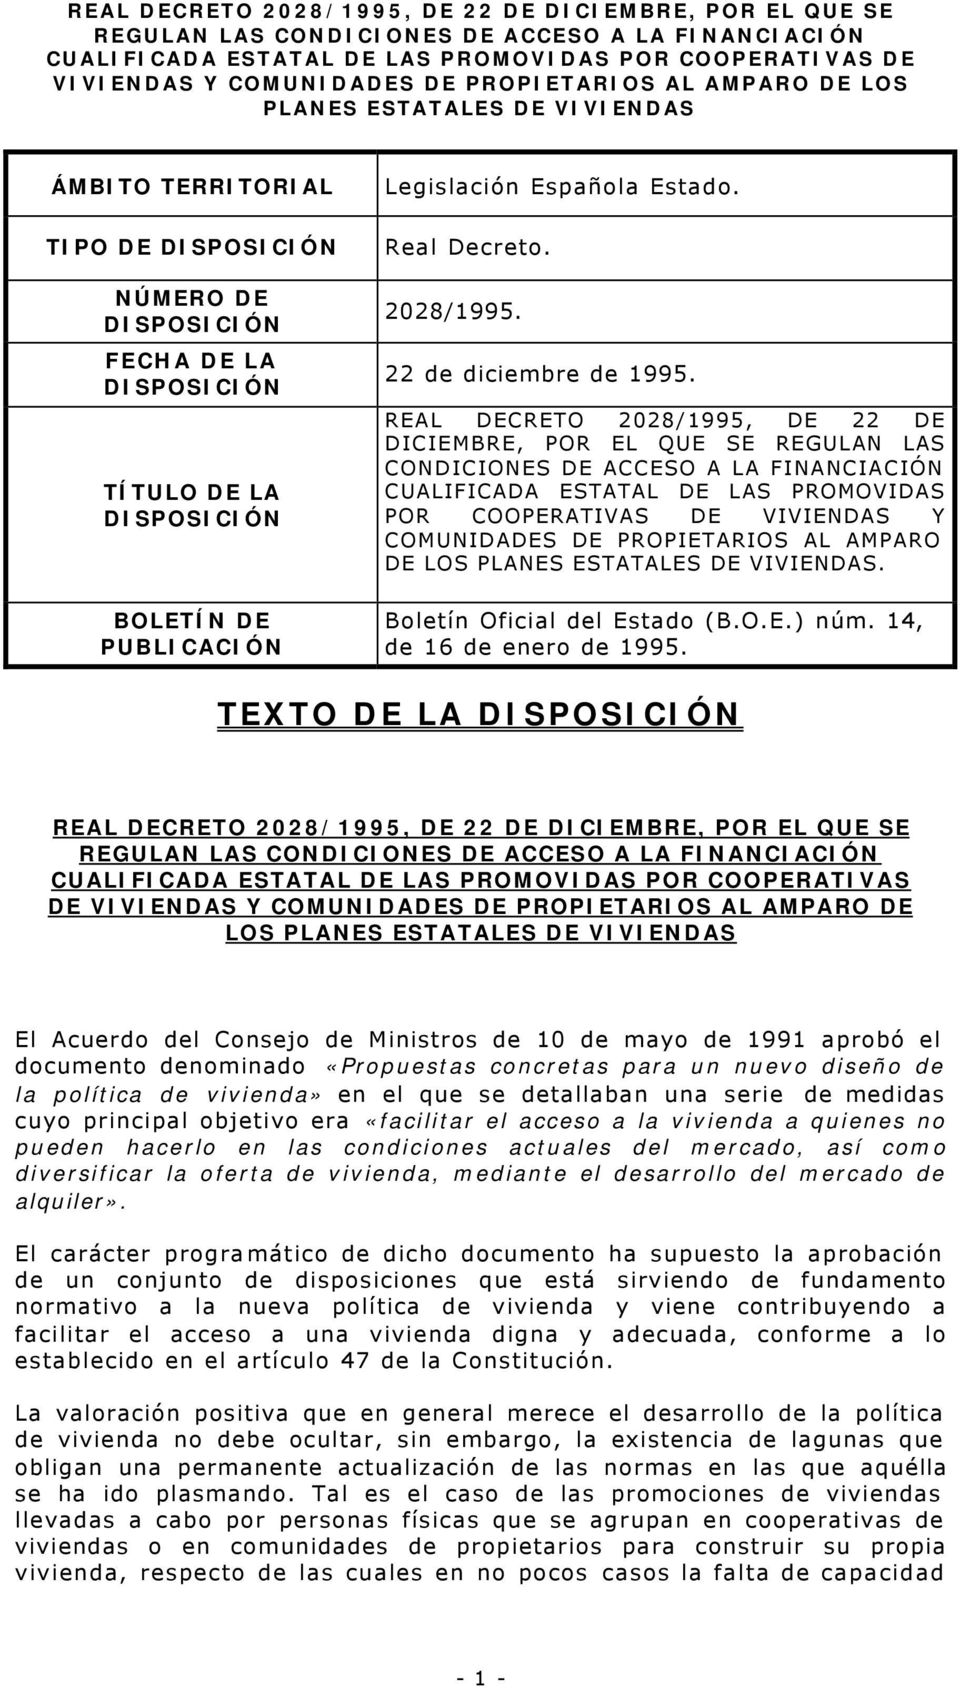 PROPIETARIOS AL AMPARO DE LOS. Boletín Oficial del Estado (B.O.E.) núm. 14, de 16 de enero de 1995.